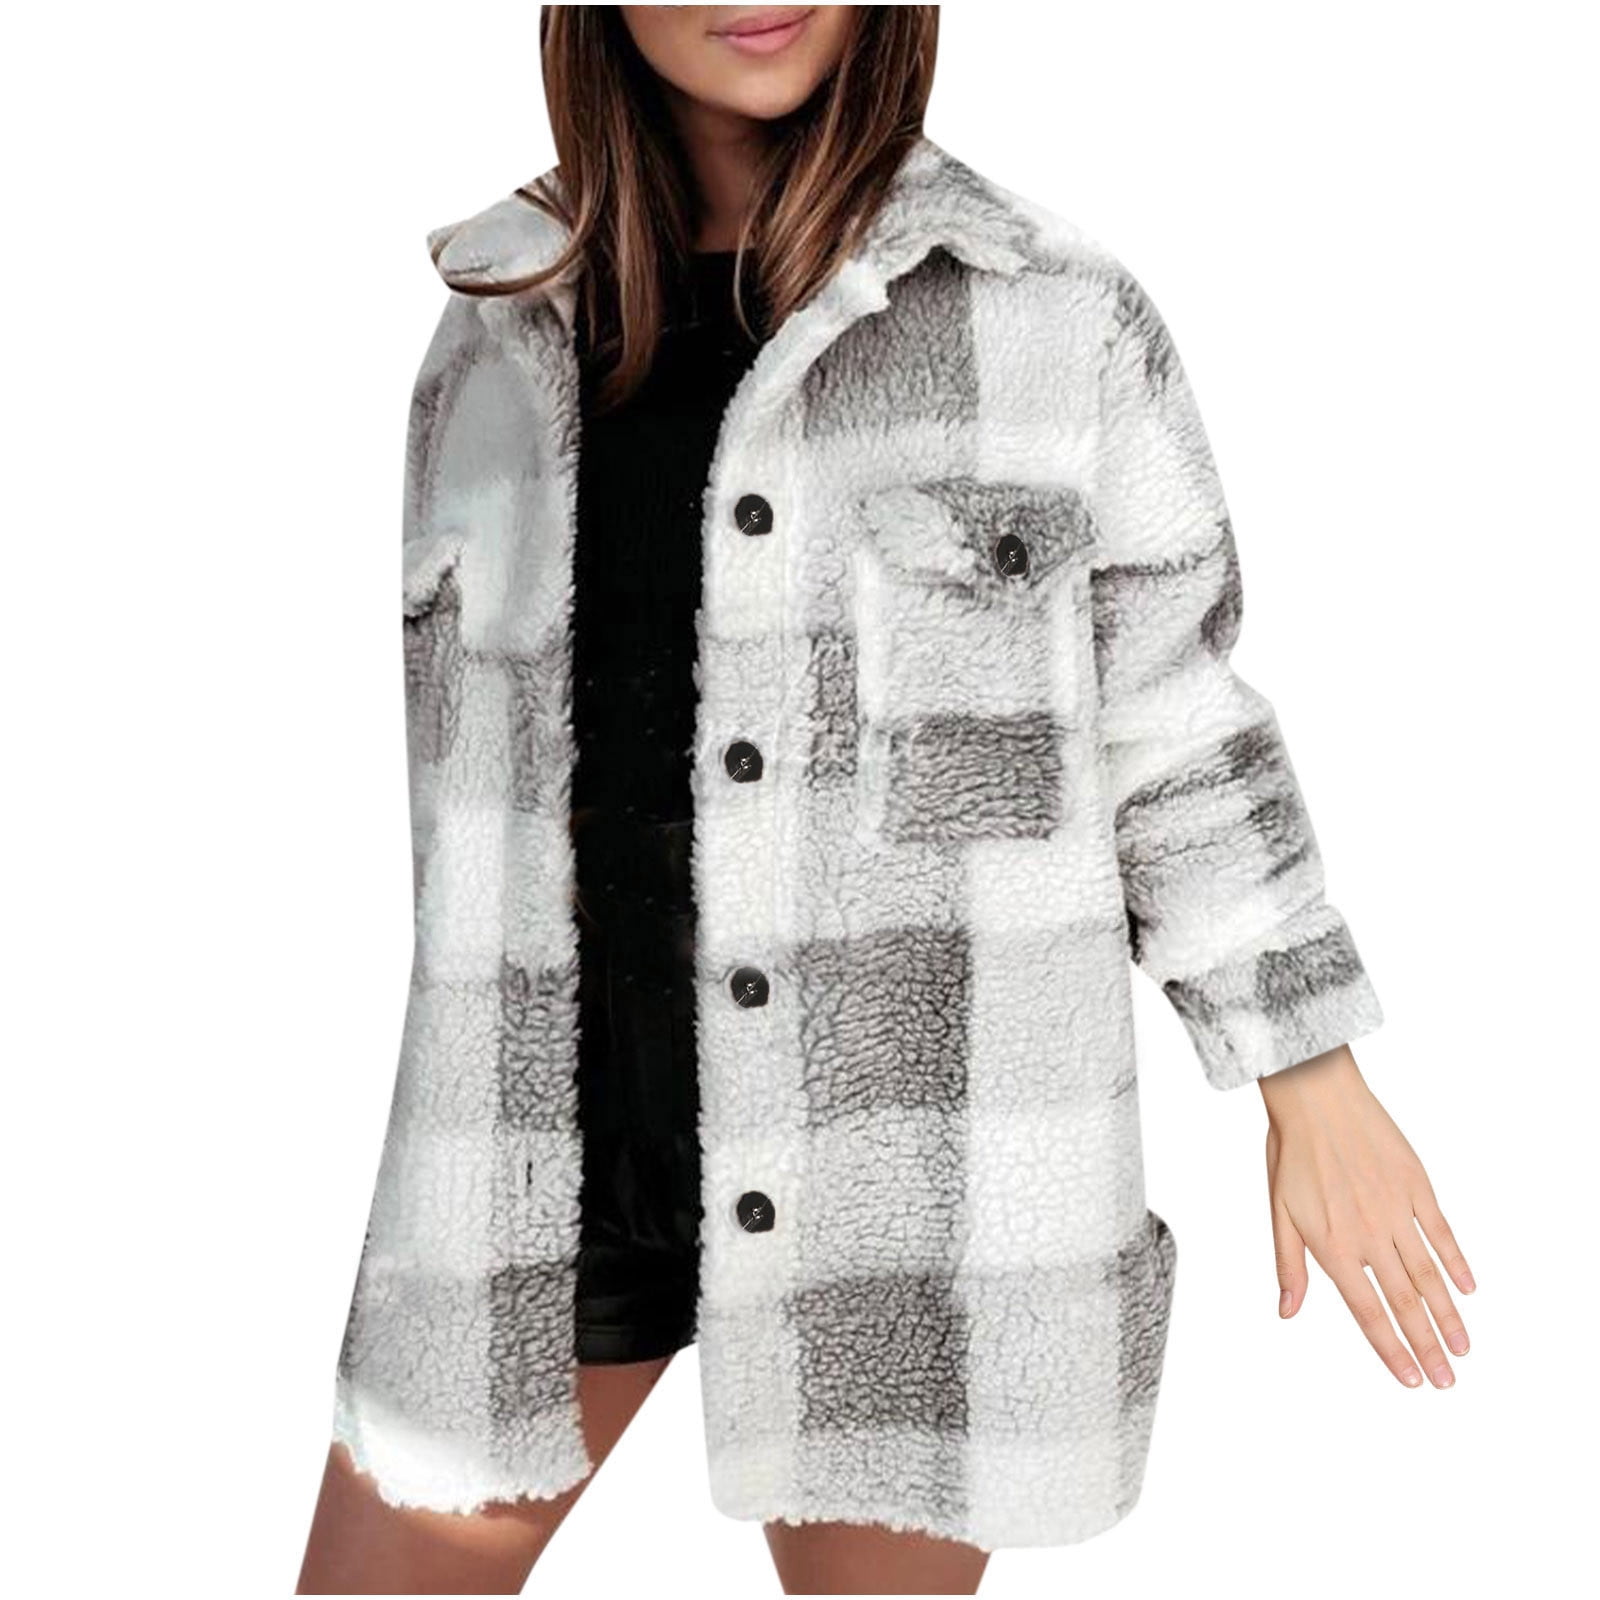 GRACE KARIN Women Warm Coat Sherpa Teddy Jacket Plaid Botton Outwear Pockets 